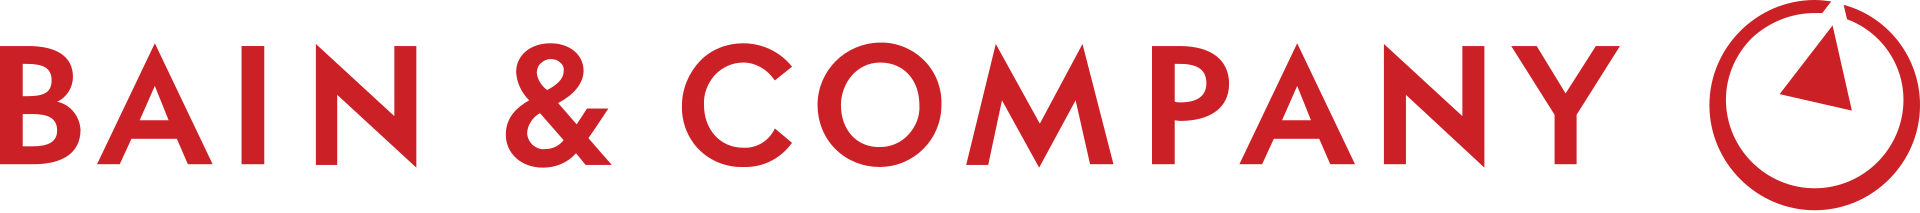 Bain & Company Brand Logo